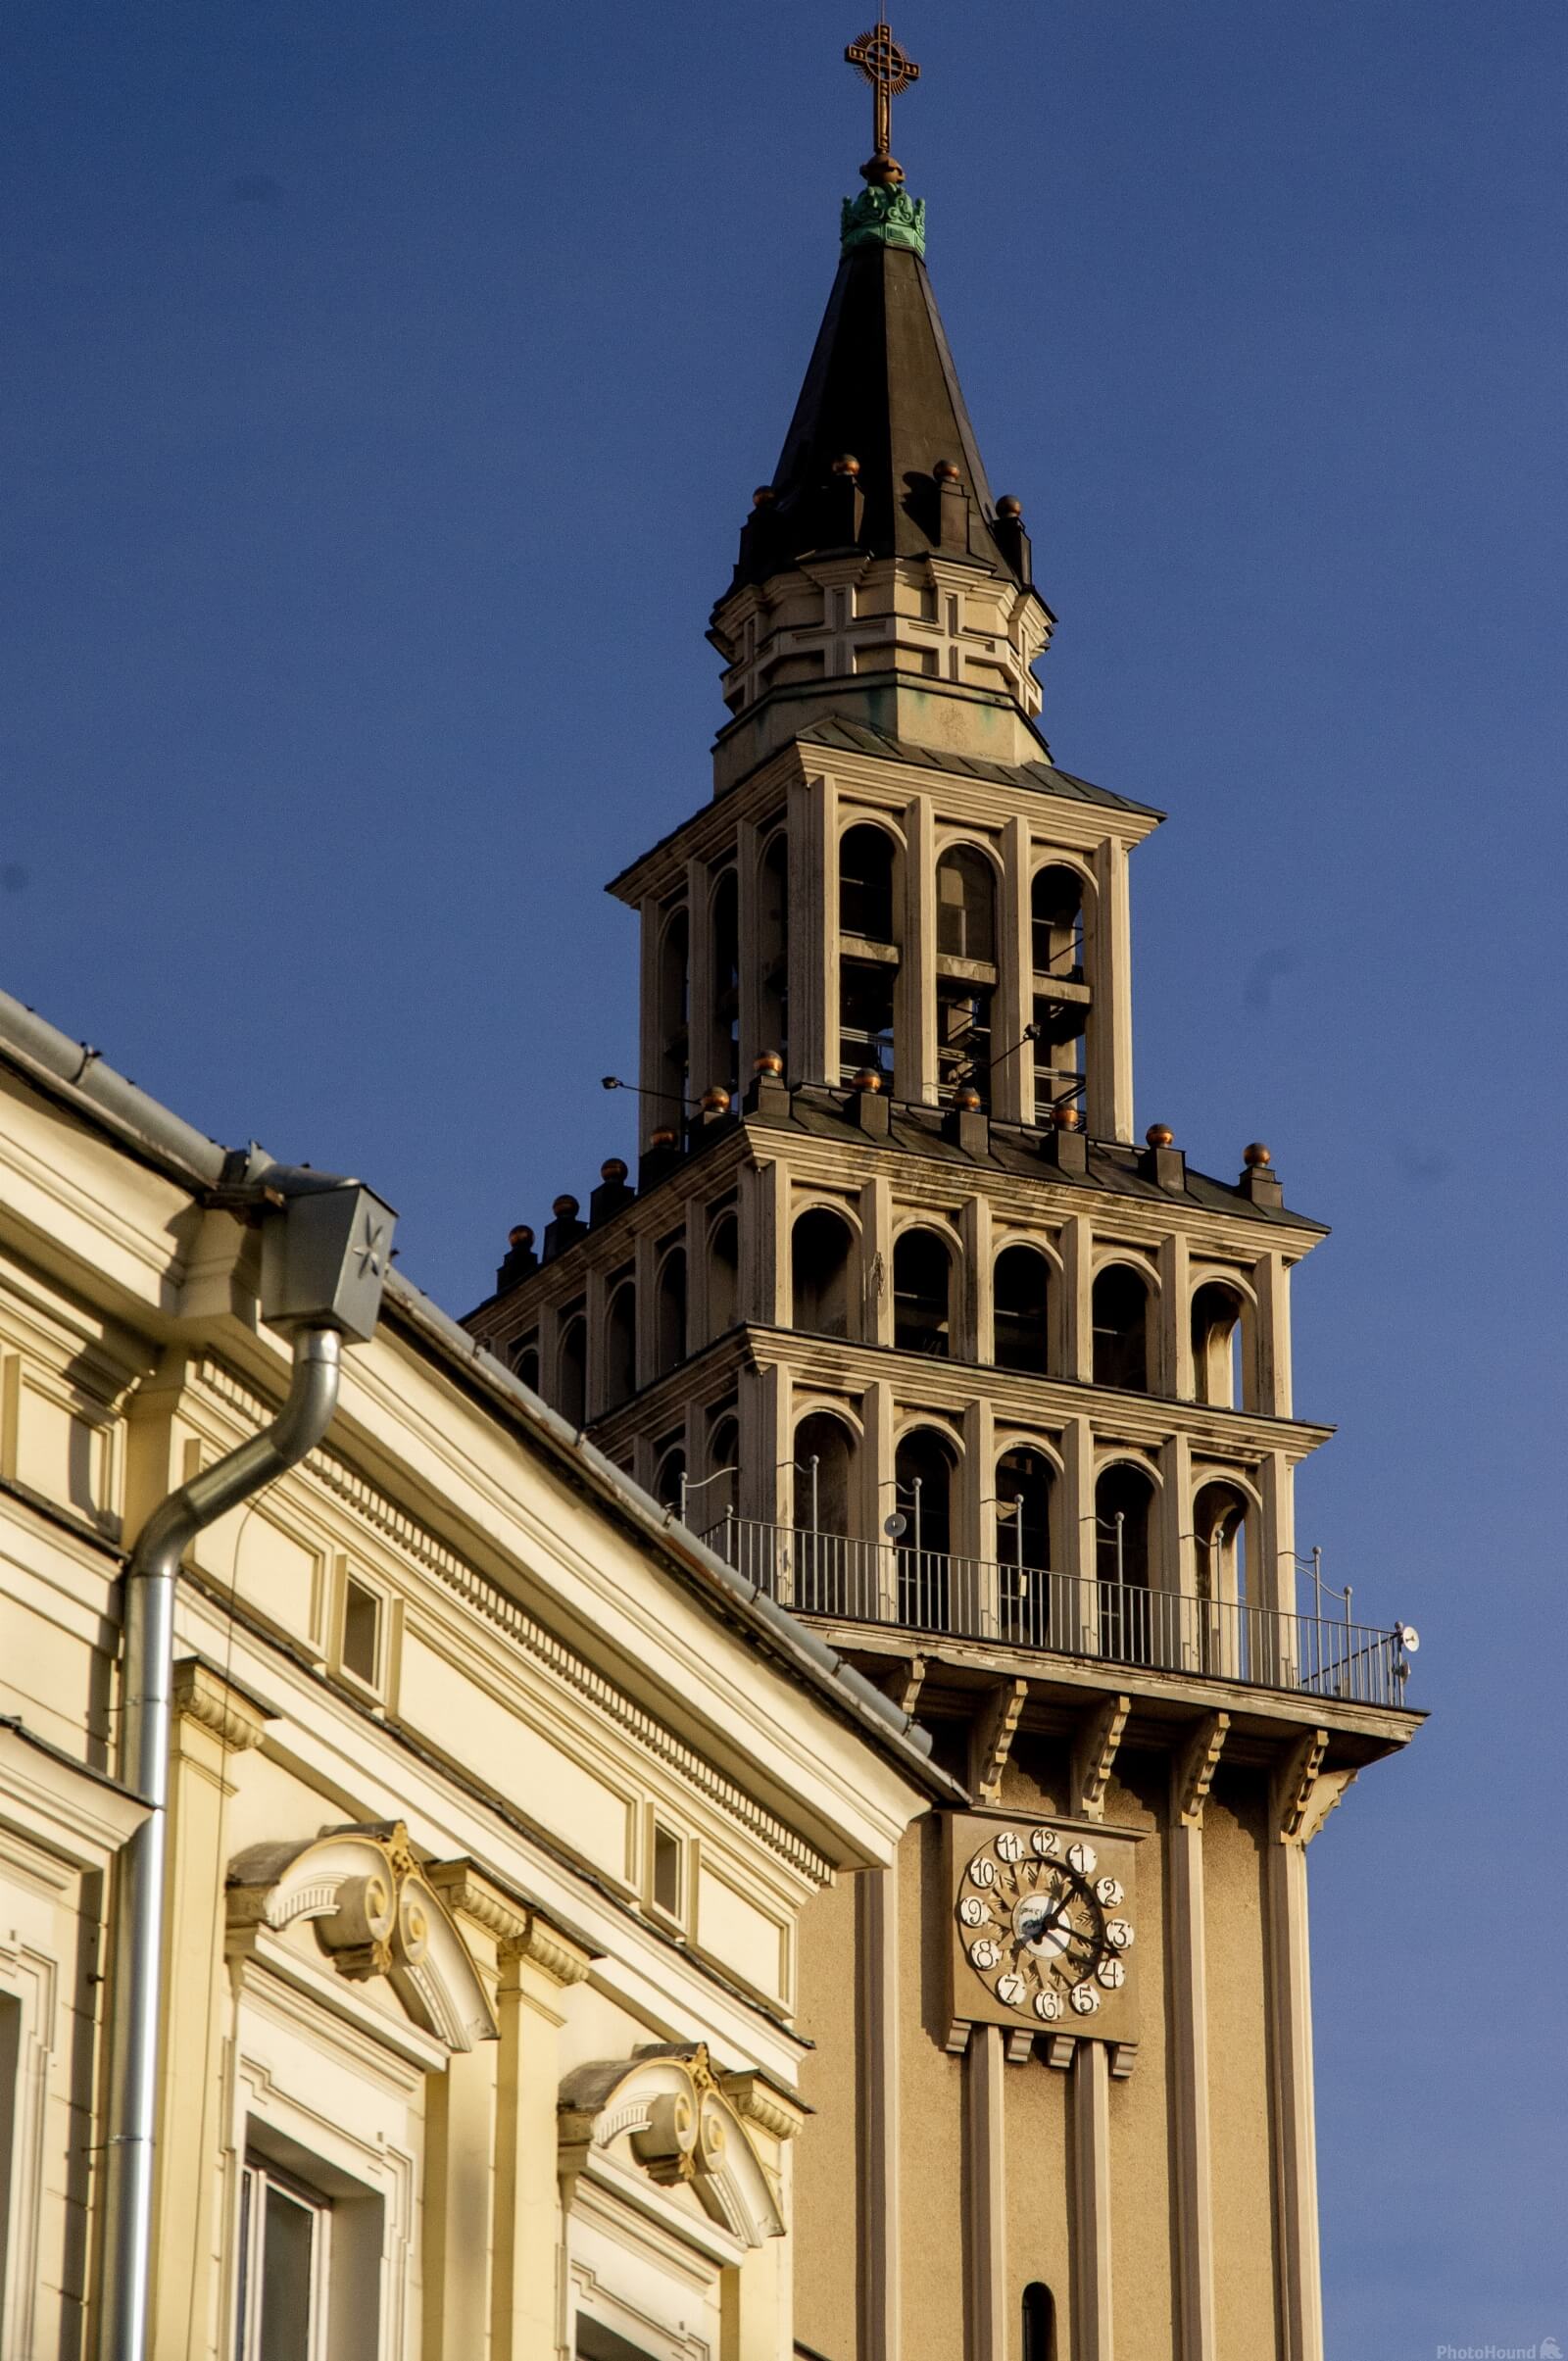 Image of Cathedral of St. Nicholas by Krzysztof Kozlowski